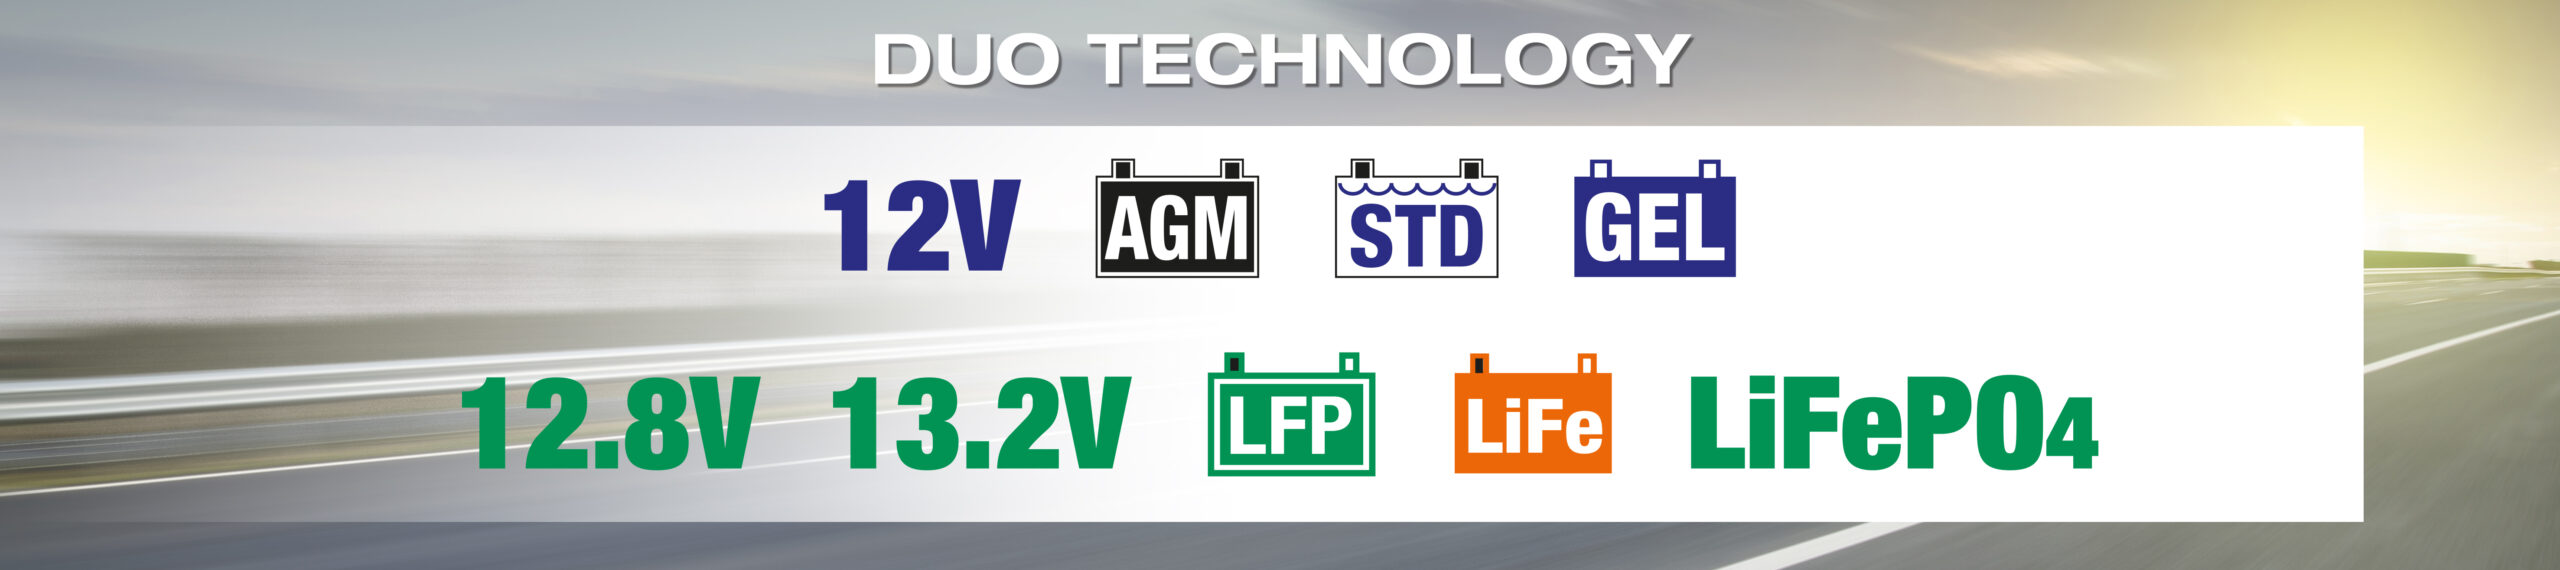 Technologie DUO d'OptiMate comprenant des batteries 12V AGM, STD et GEL et 12.8V/13.2V Lithium LiFe/LFP (LiFePO4)